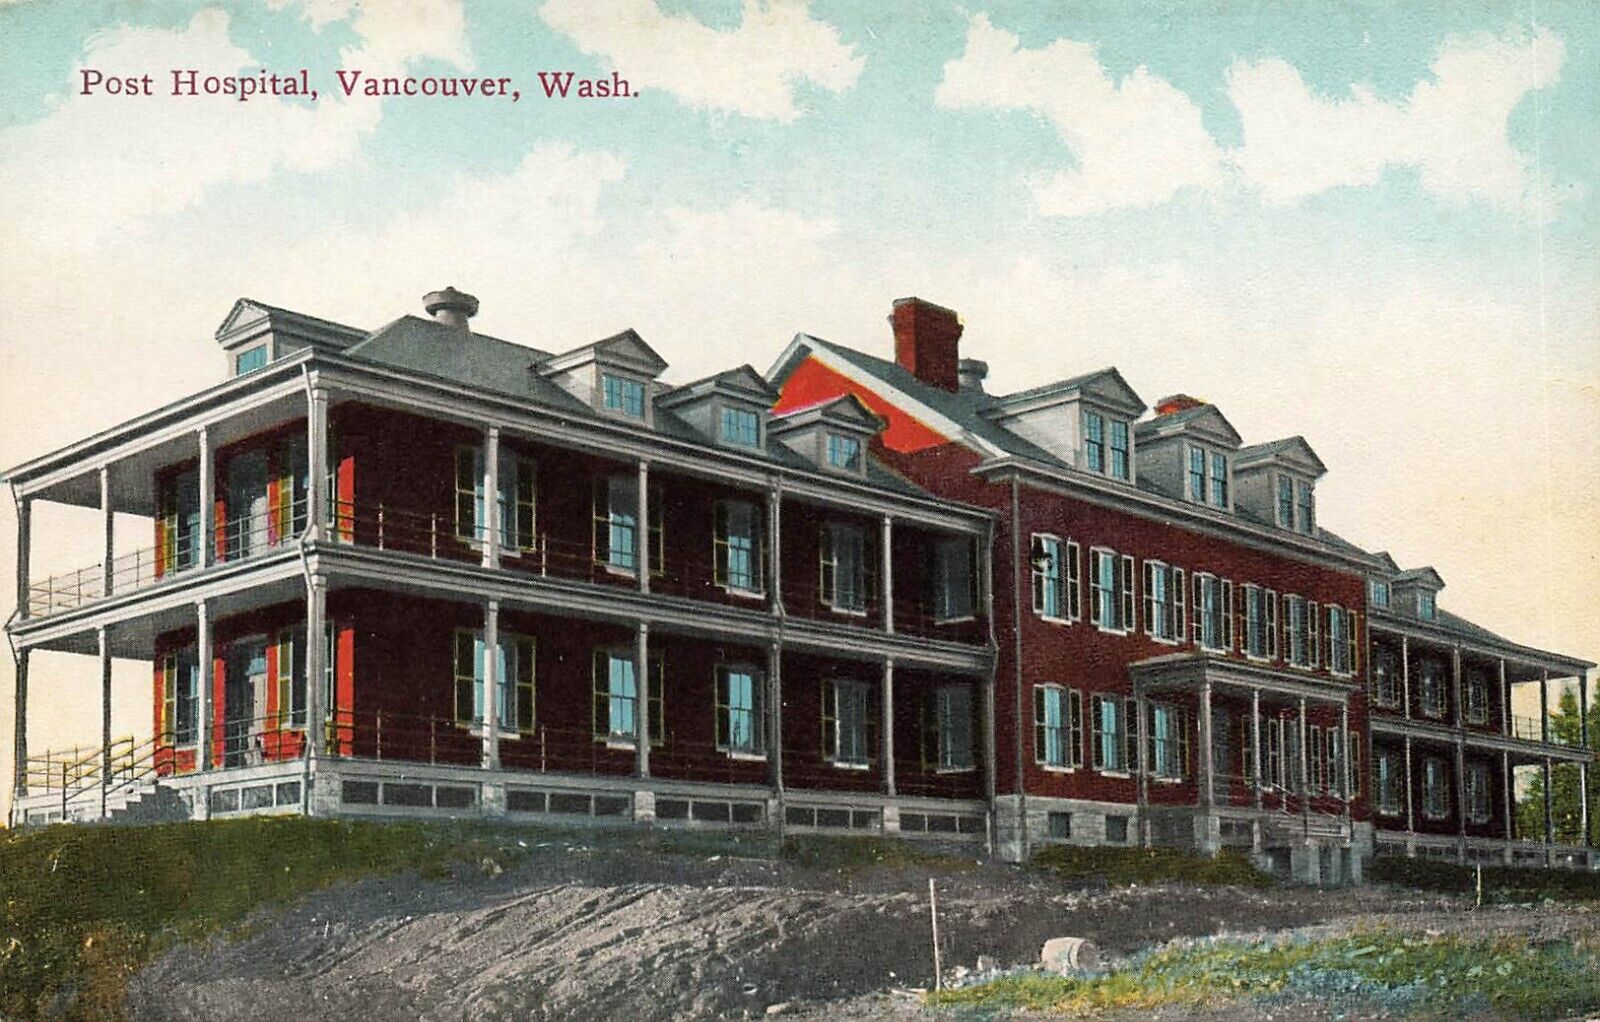 WASHINGTON POSTCARD: VIEW OF POST HOSPITAL, VANCOUVER, WA